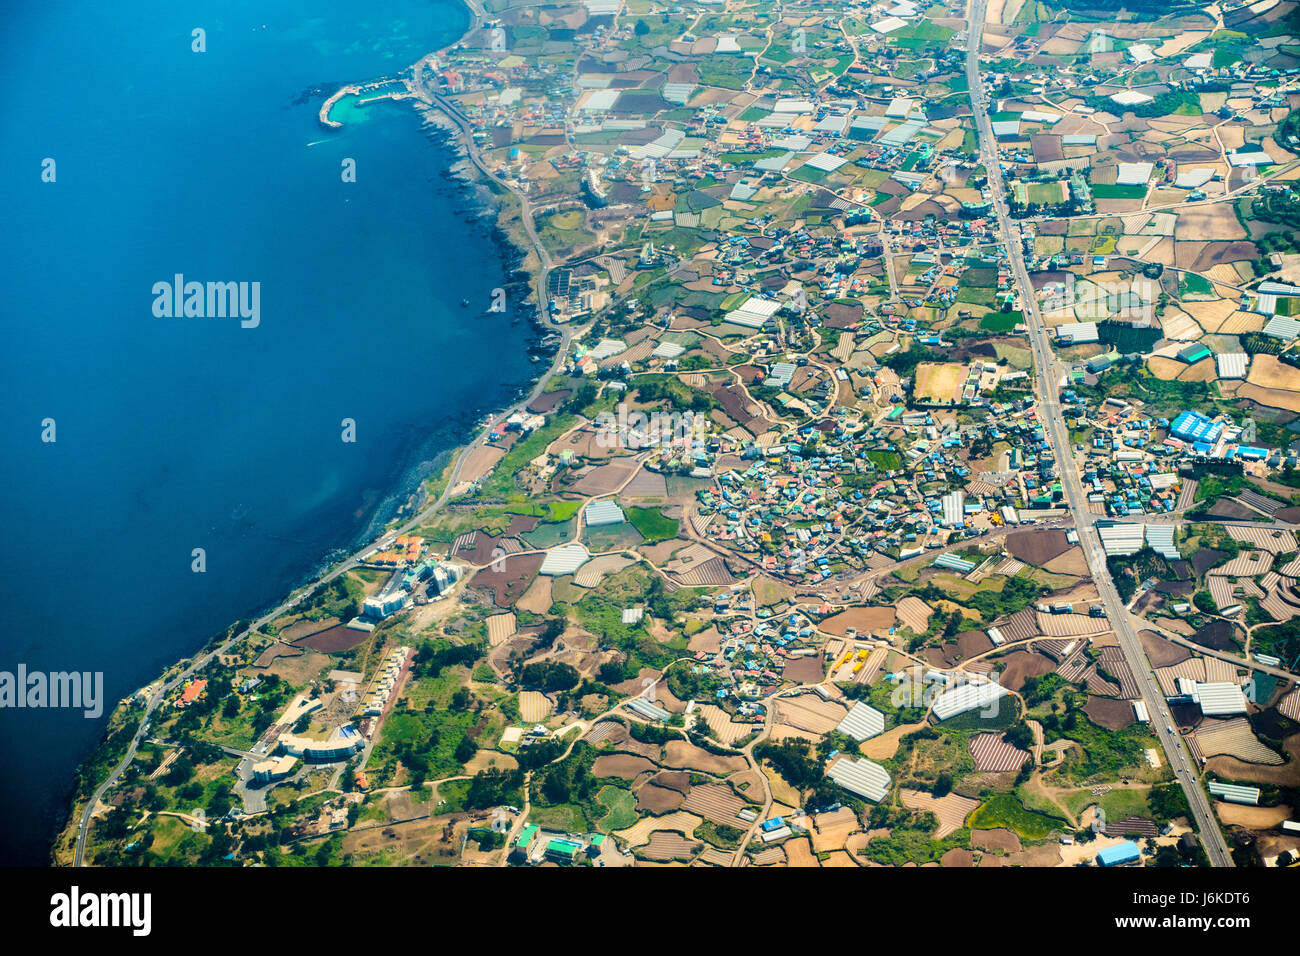 Eine Luftaufnahme von Jeju Island, eine Insel im Süden der Republik Korea. Ein beliebtes Touristenziel in Asien Stockfoto